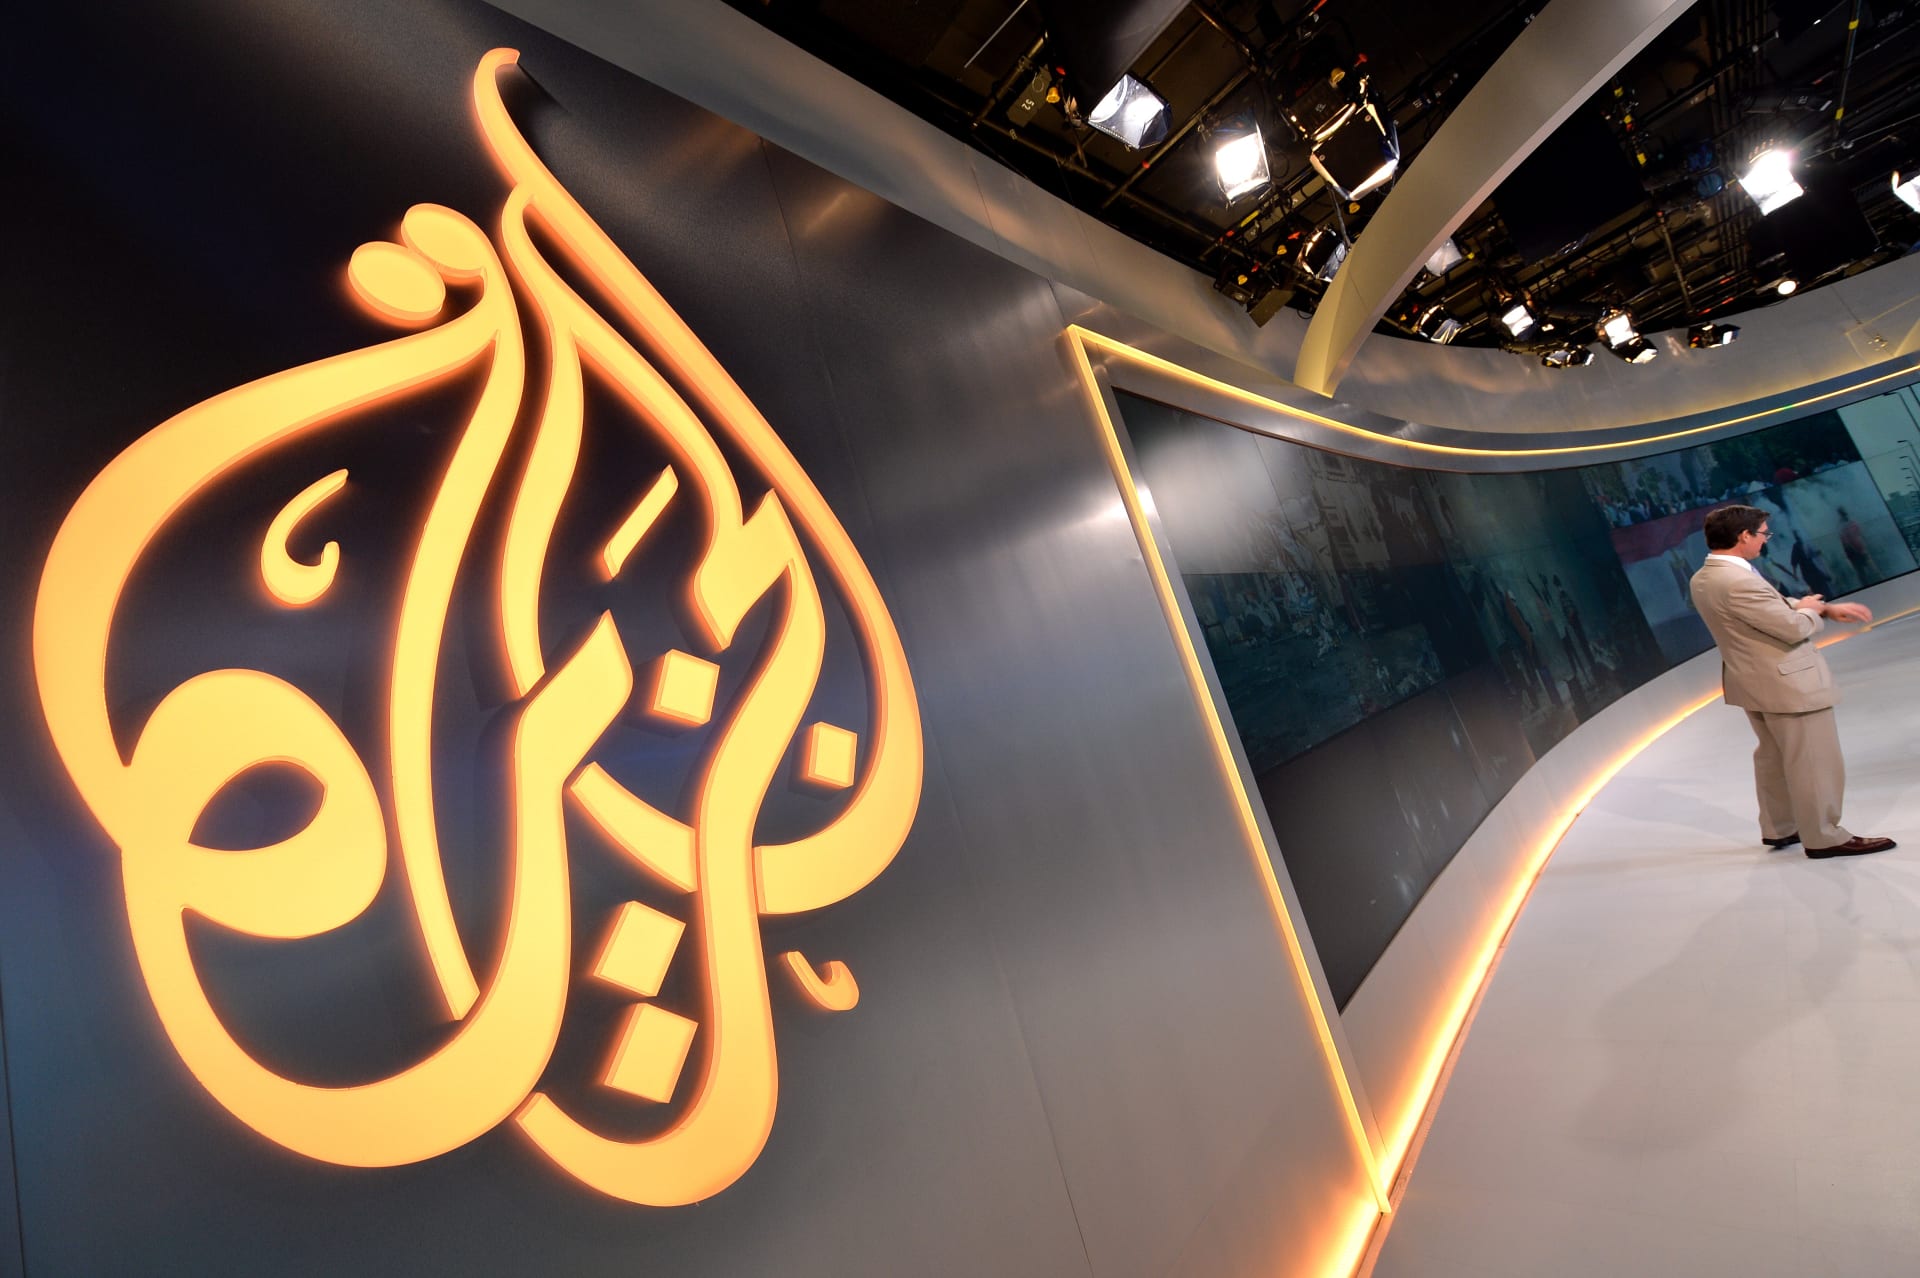 شبكة "الجزيرة": مطالب إغلاقنا هي محاولة لإسكات "الإعلام الحر" في المنطقة